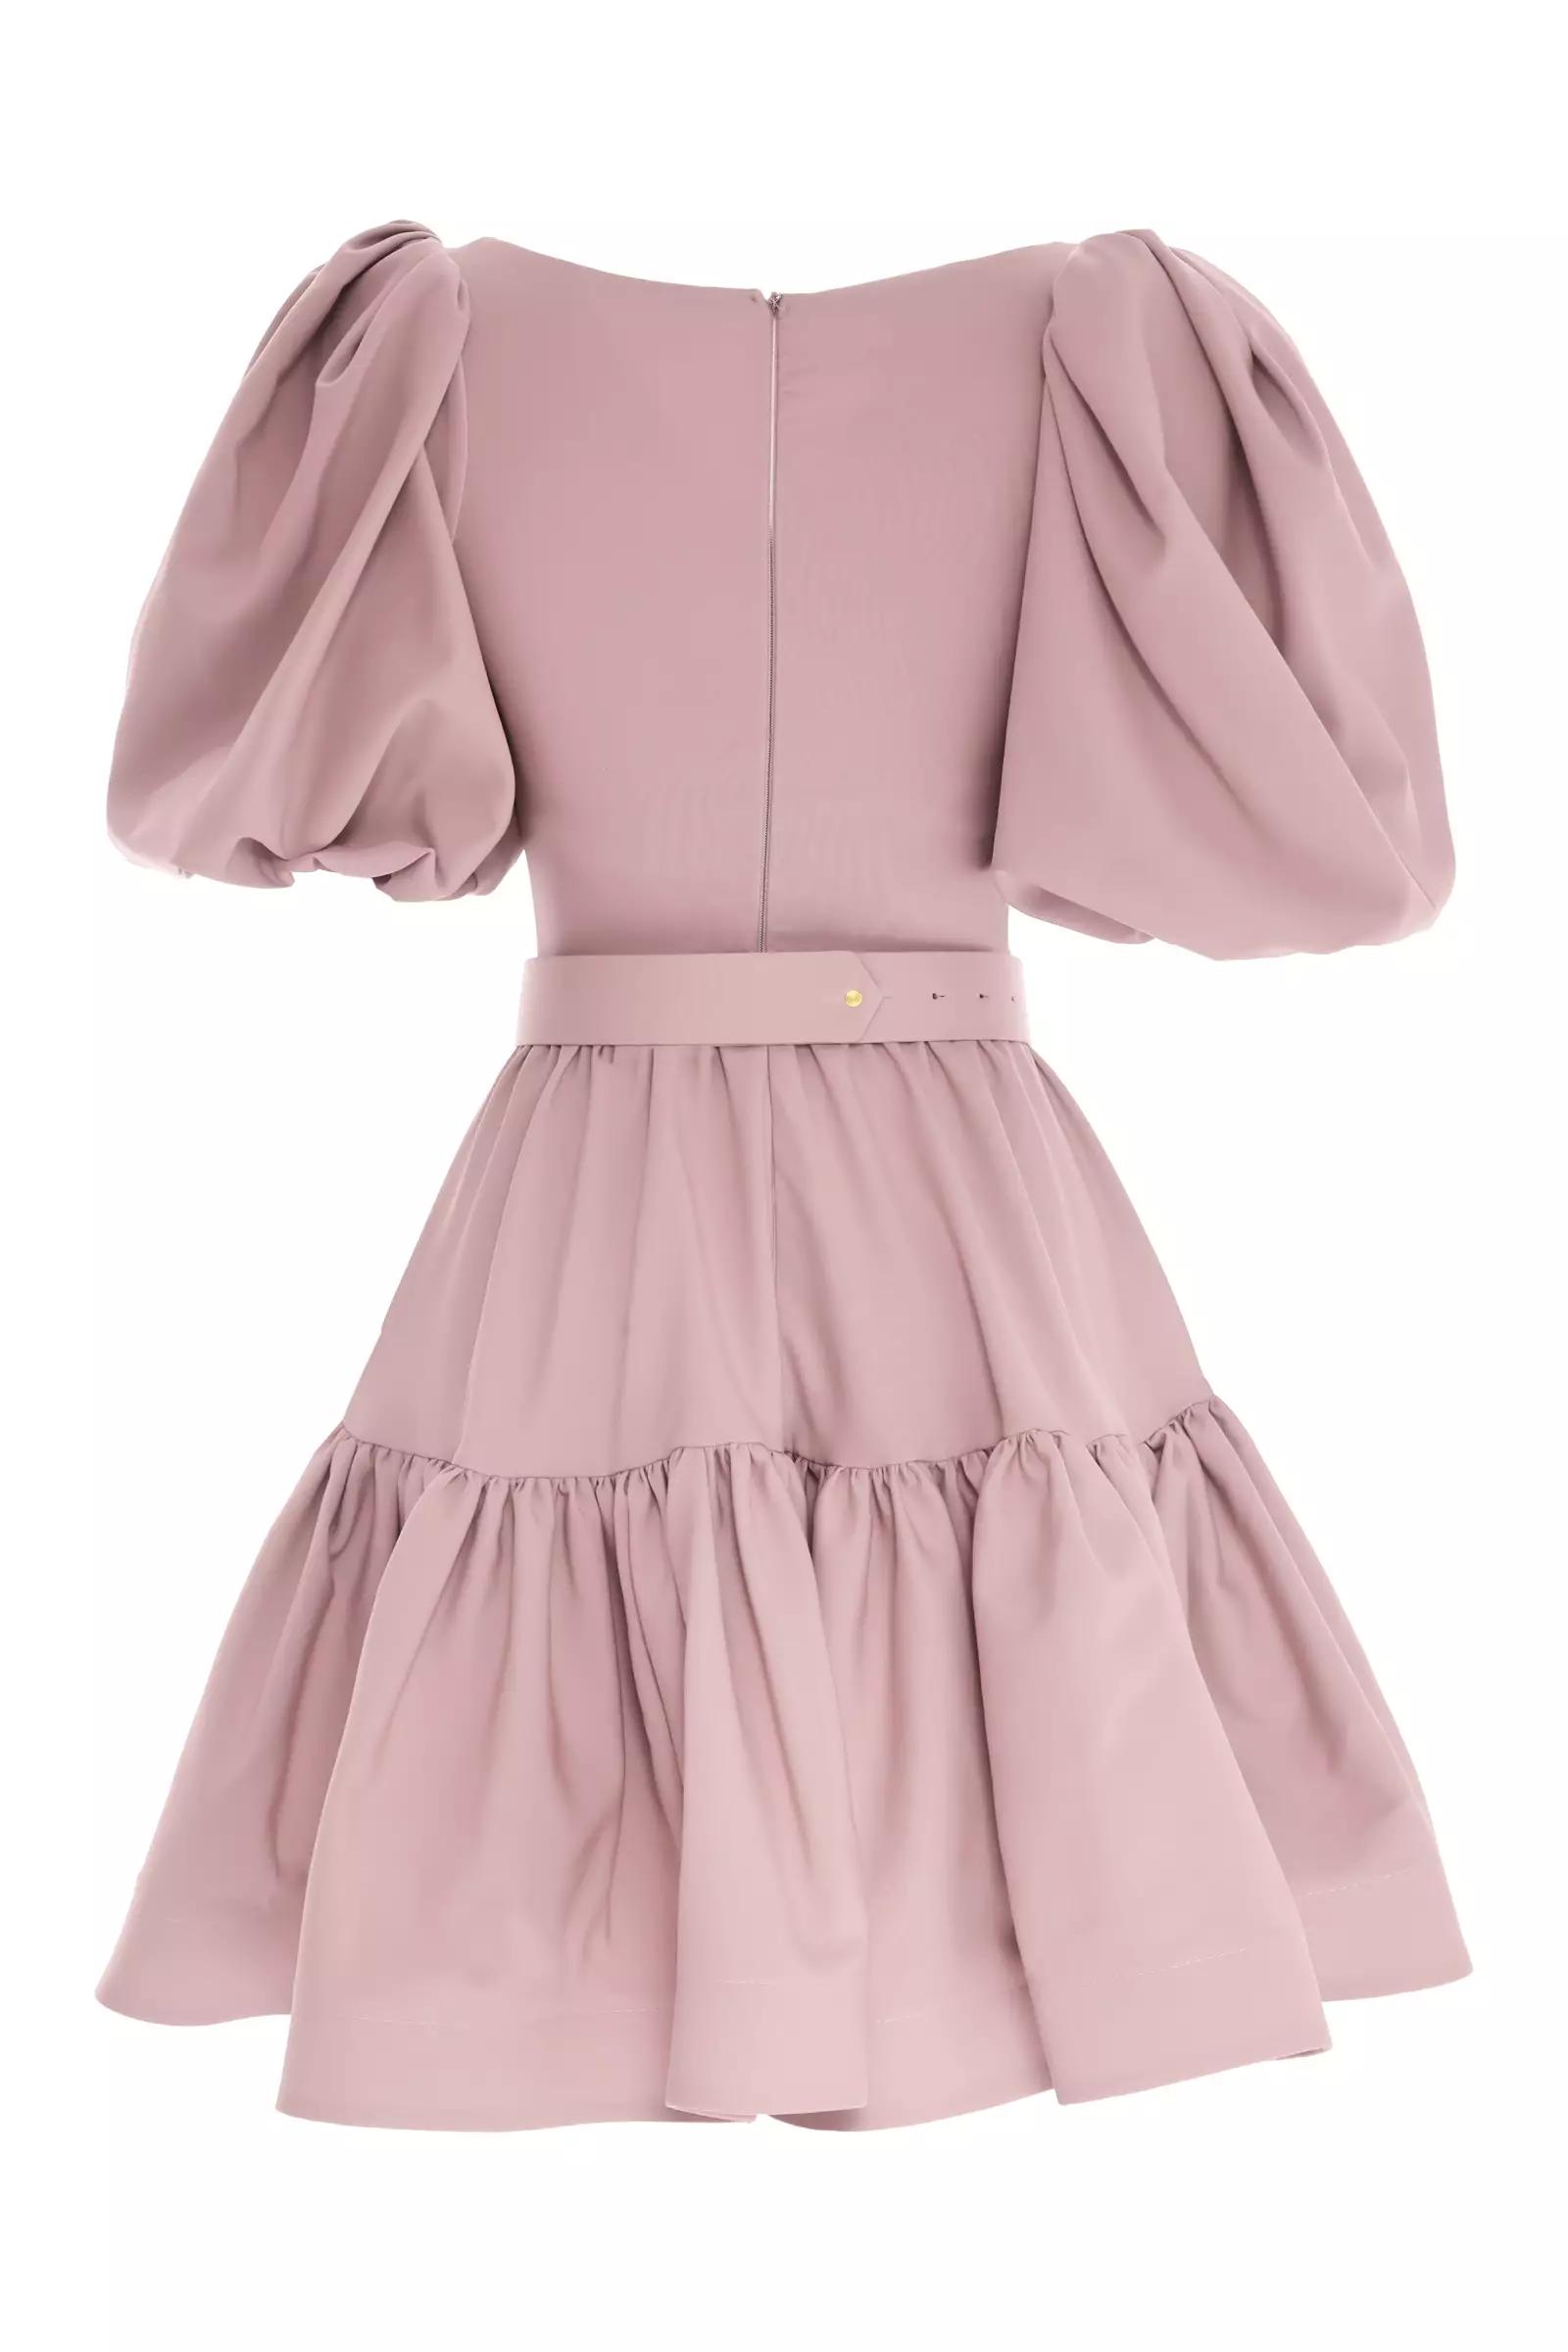 Blush crepe short sleeve mini dress